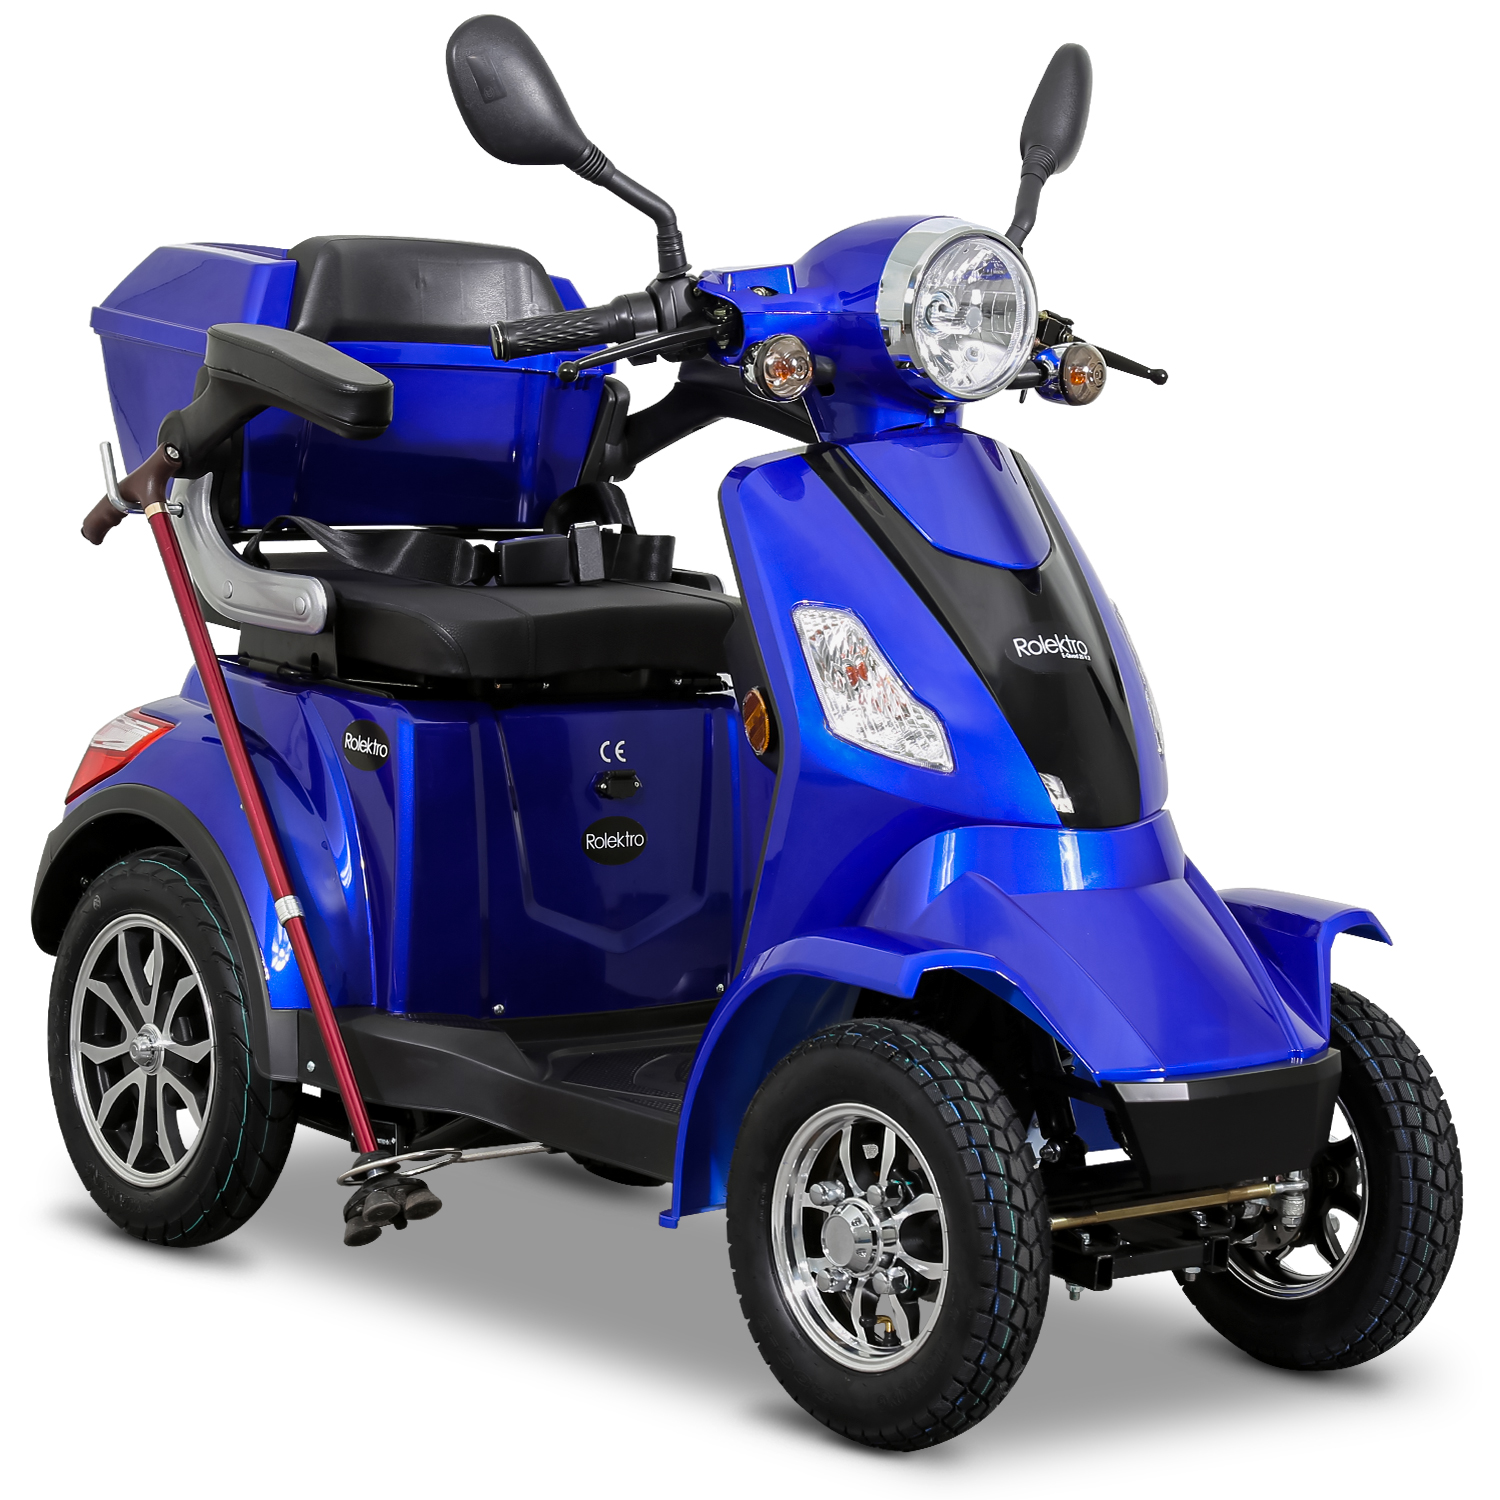 ROLEKTRO E-Quad 25 V.2 Unisex-Rad, Zoll, Blei-Gel (Laufradgröße: E-Scooter Blau) Seniorenmobil 15,7